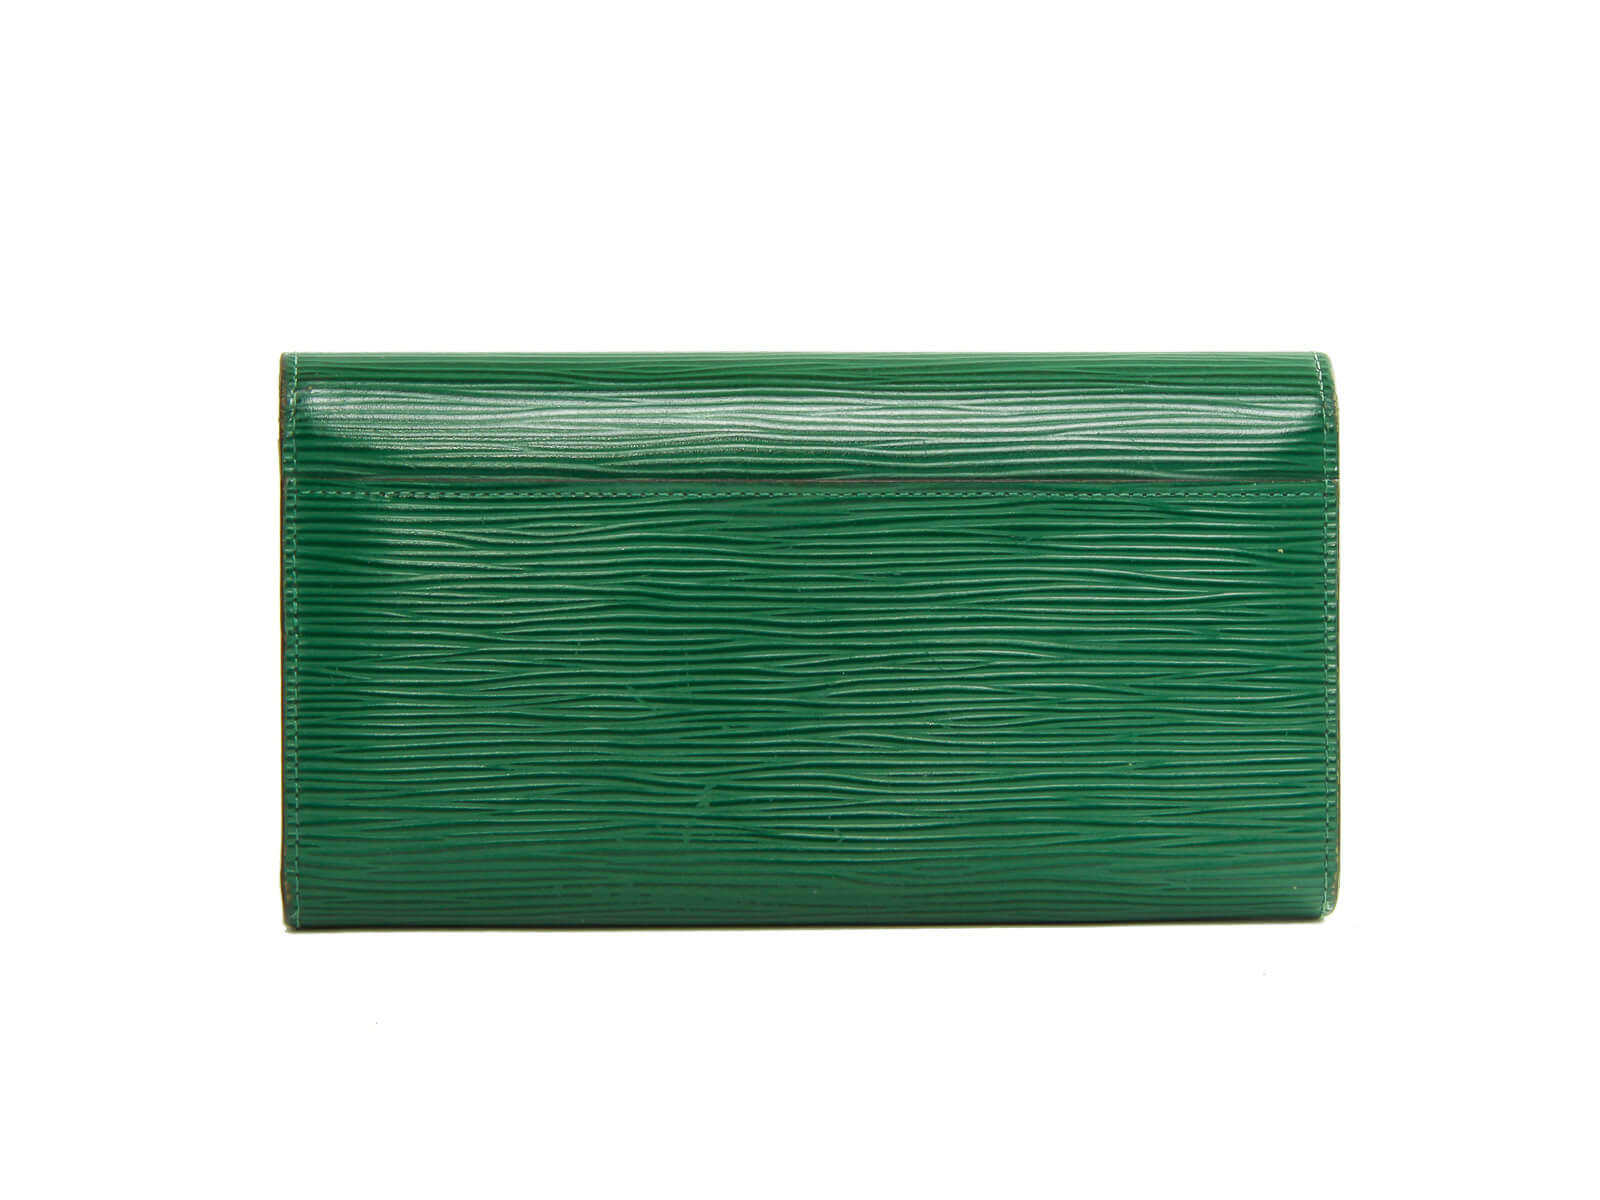 Louis Vuitton Borneo Green EPI Leather Sarah Wallet